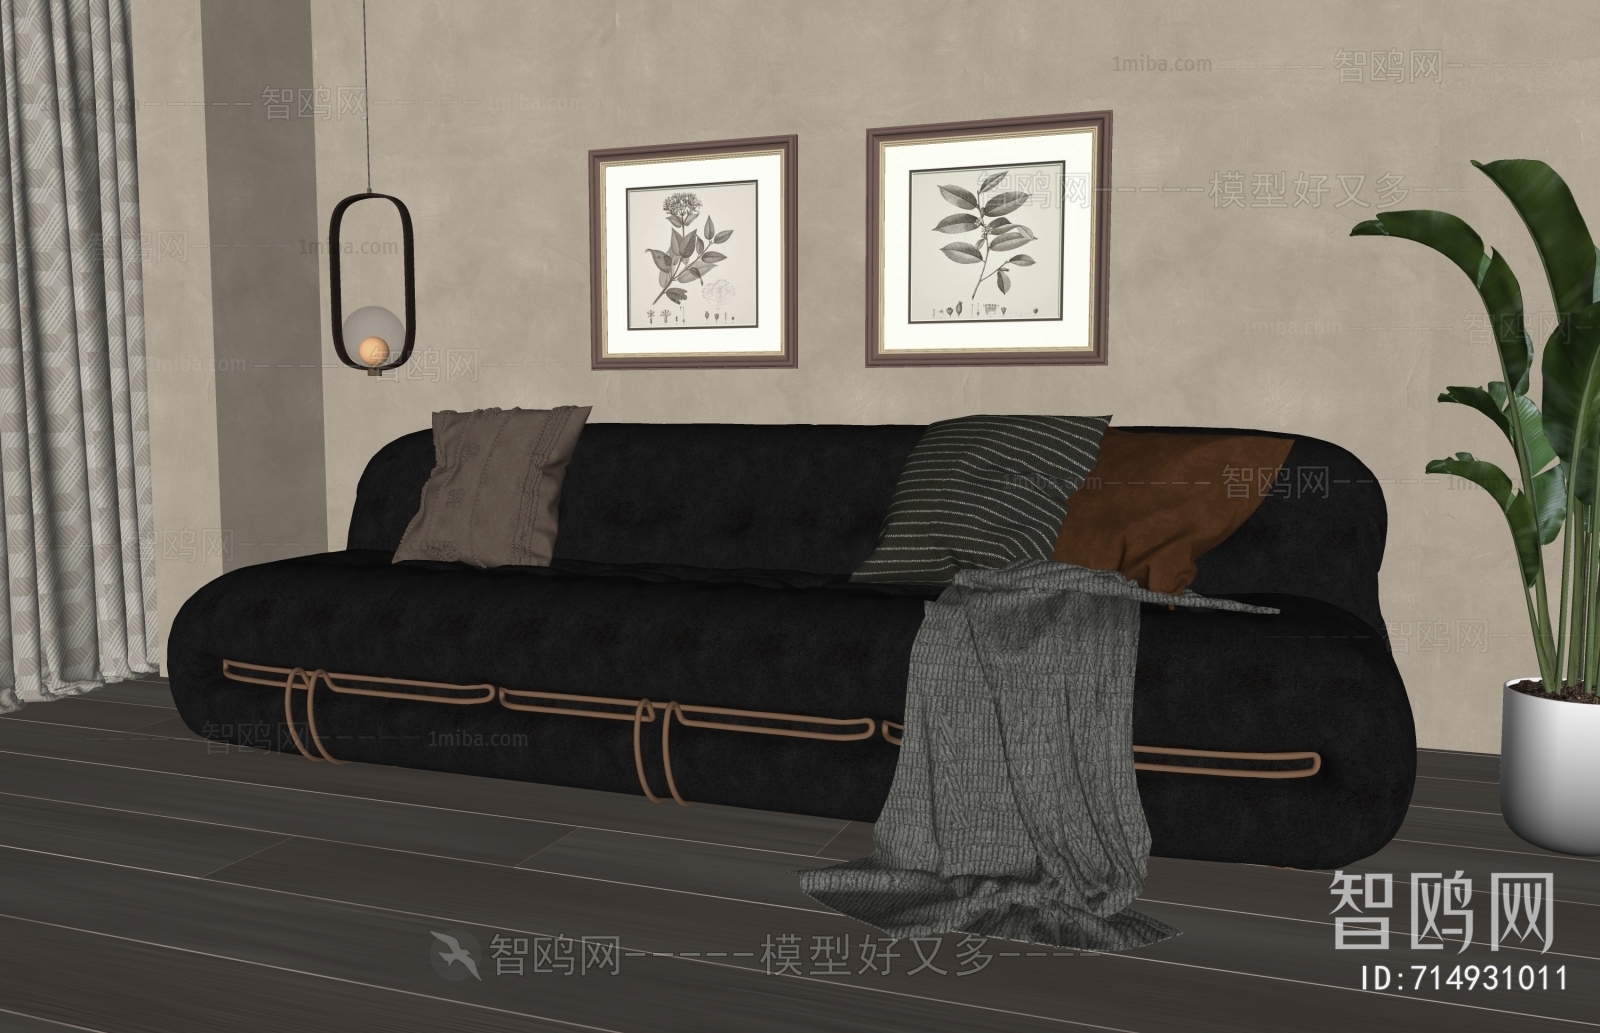 Retro Style Multi Person Sofa